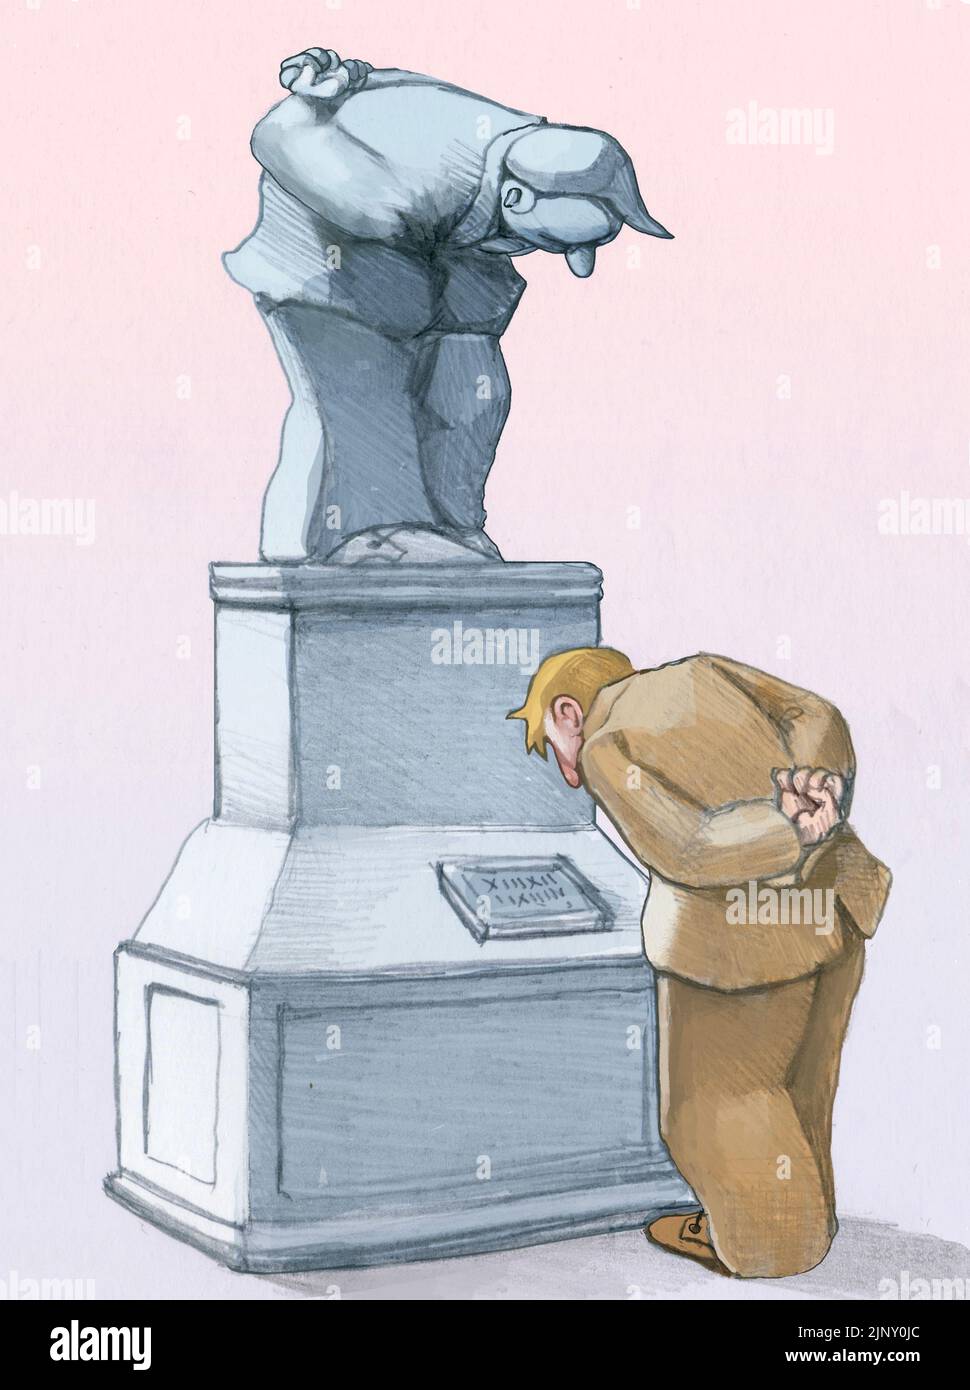 un hombre se inclina para leer la señal de un monumento mientras la estatua misma se inclina para mirar al lector, una metáfora del arte que nos refleja Foto de stock